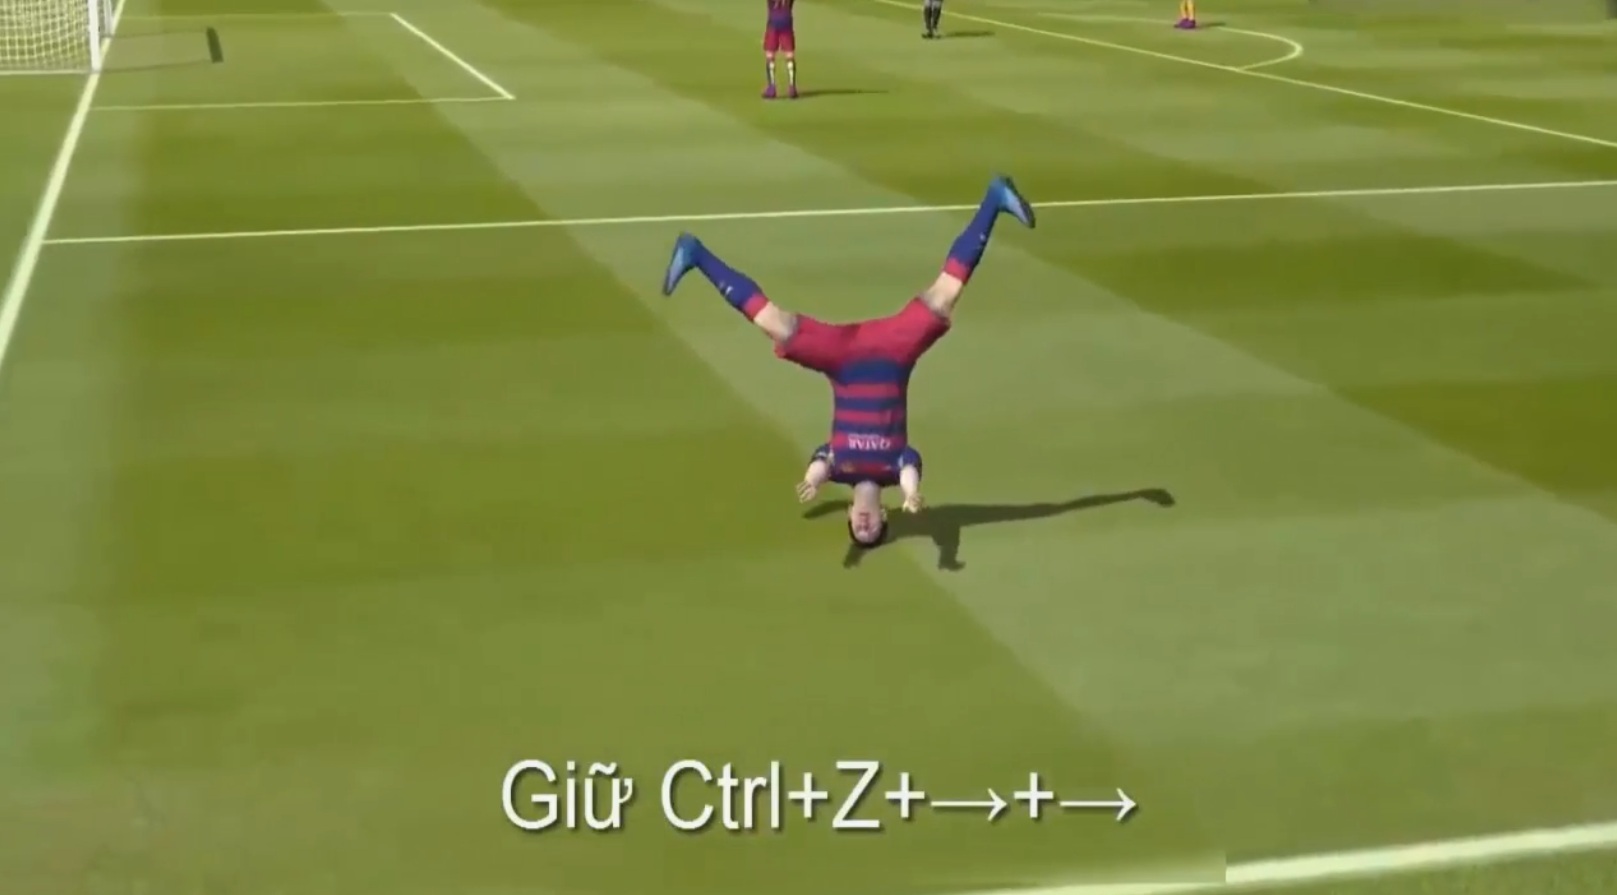 Với New Engine, các cầu thủ trong FIFA Online 3 sẽ ăn mừng bàn thắng siêu dị